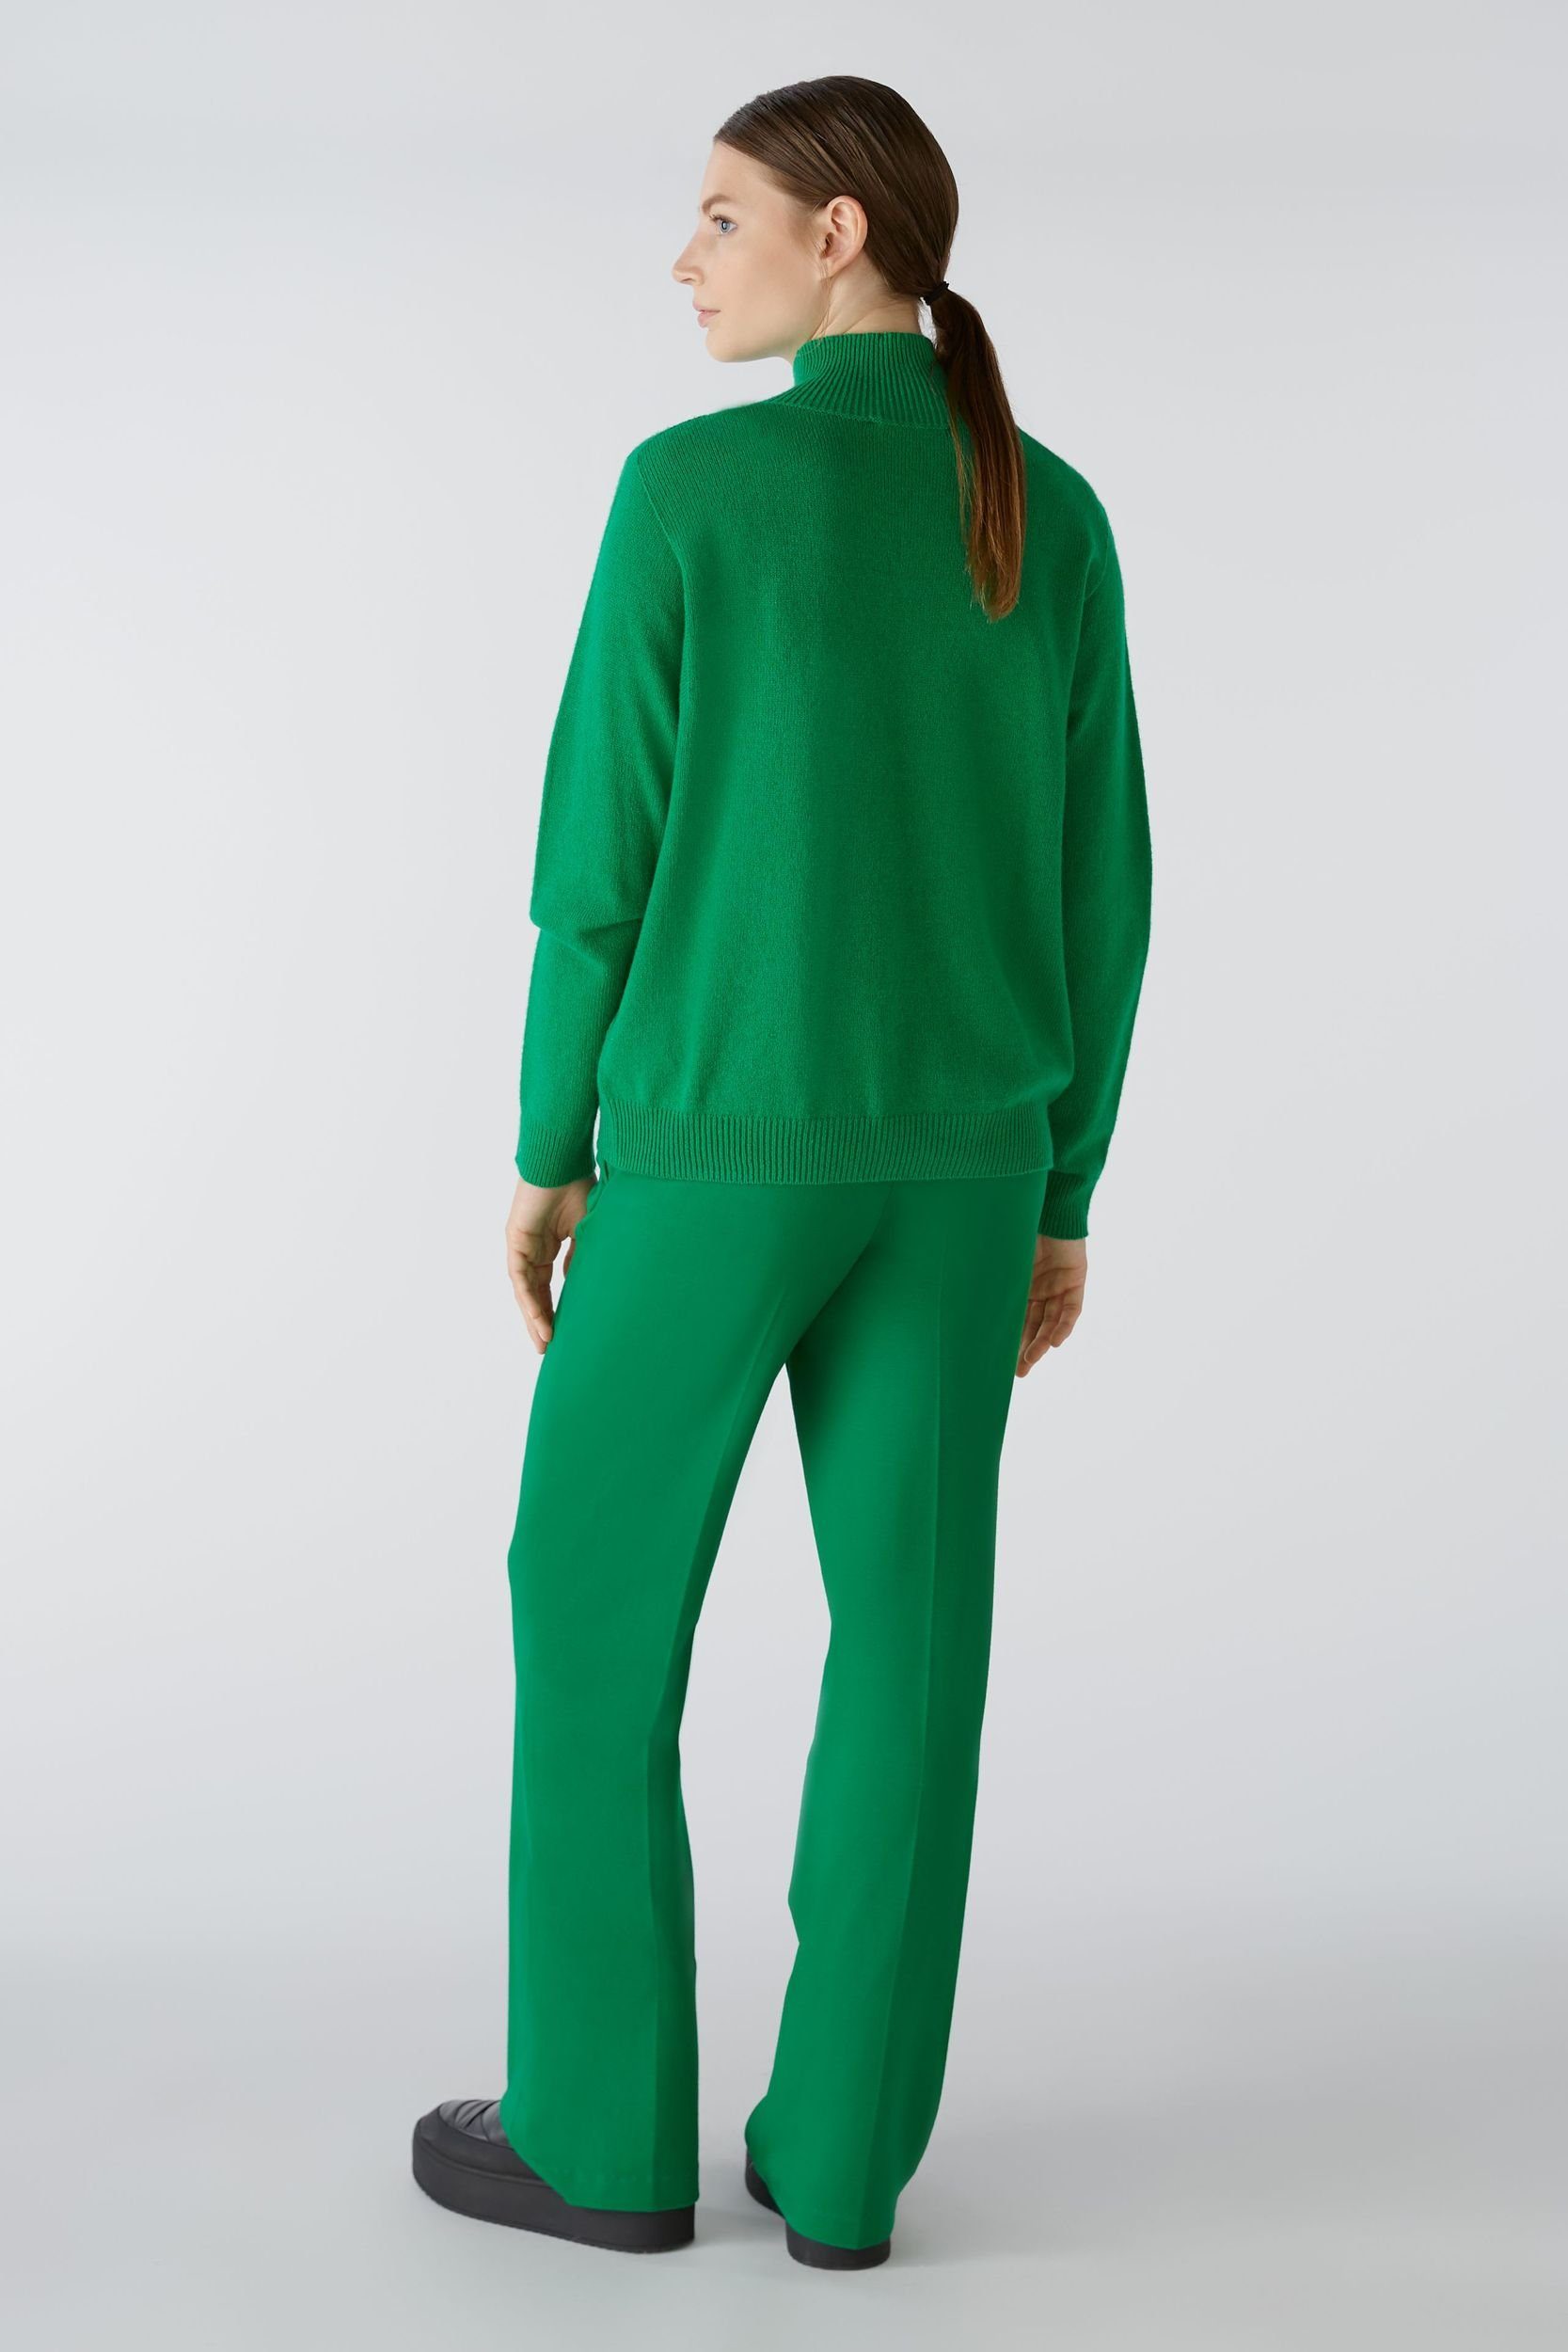 Oui Stehkragenpullover Pullover Wollmischung green